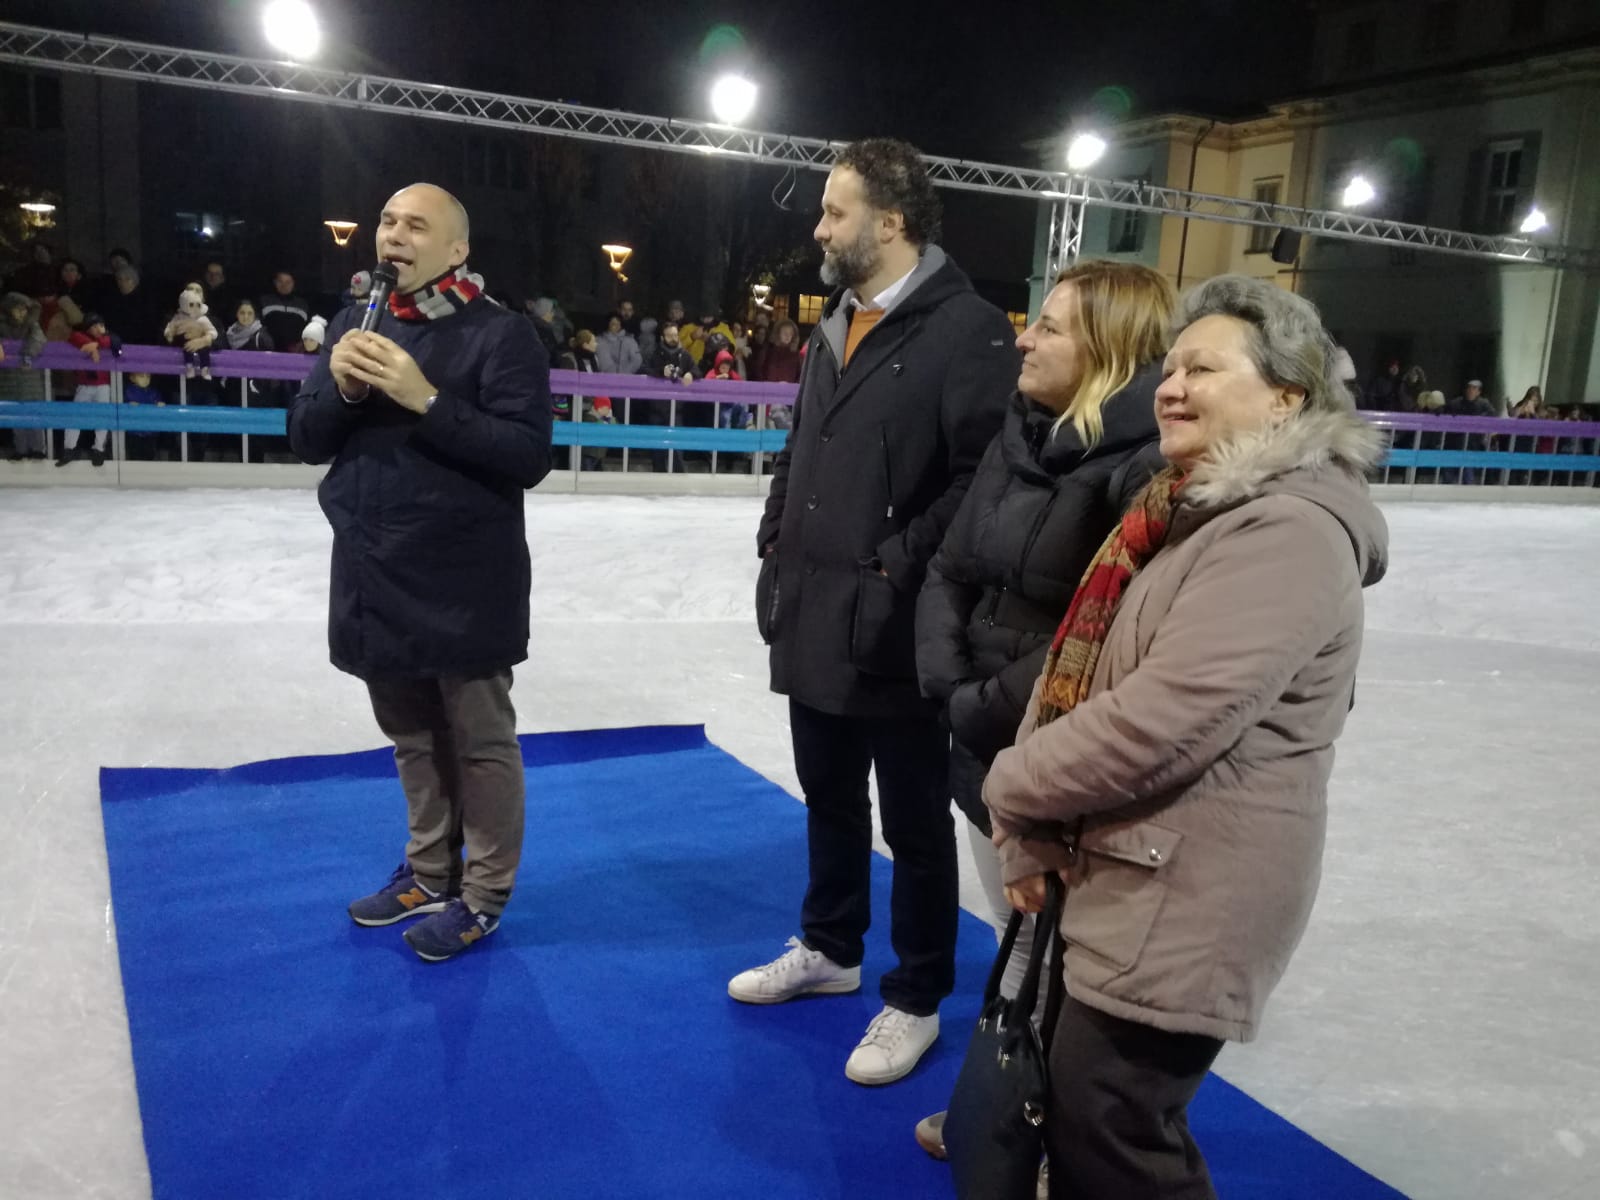 Il Natale a Cernusco sul Naviglio arriva prima. Inaugurata la pista di pattinaggio sul ghiaccio.